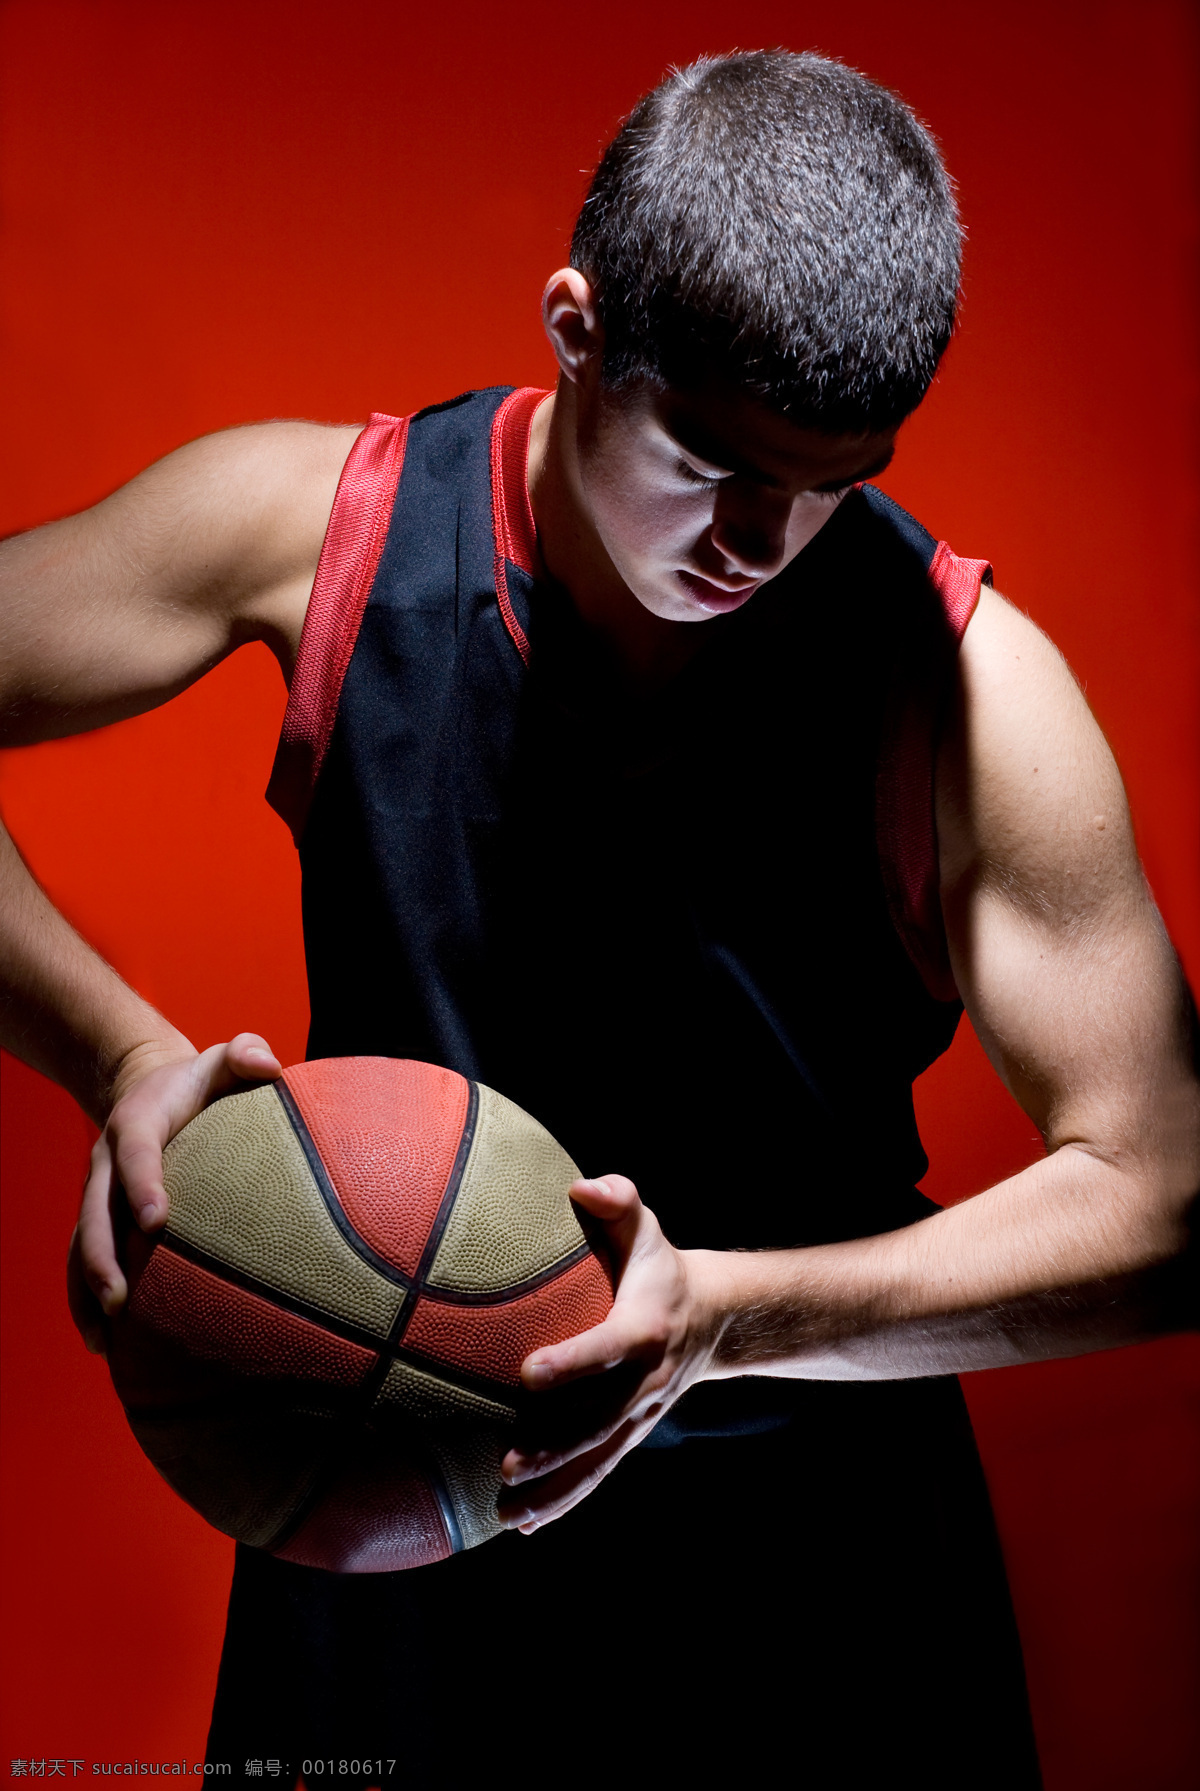 篮球 人物 比赛 男人 体育 运动 运动员 人物摄影 职业人物 时尚人物 生活人物 健身 体育运动 生活百科